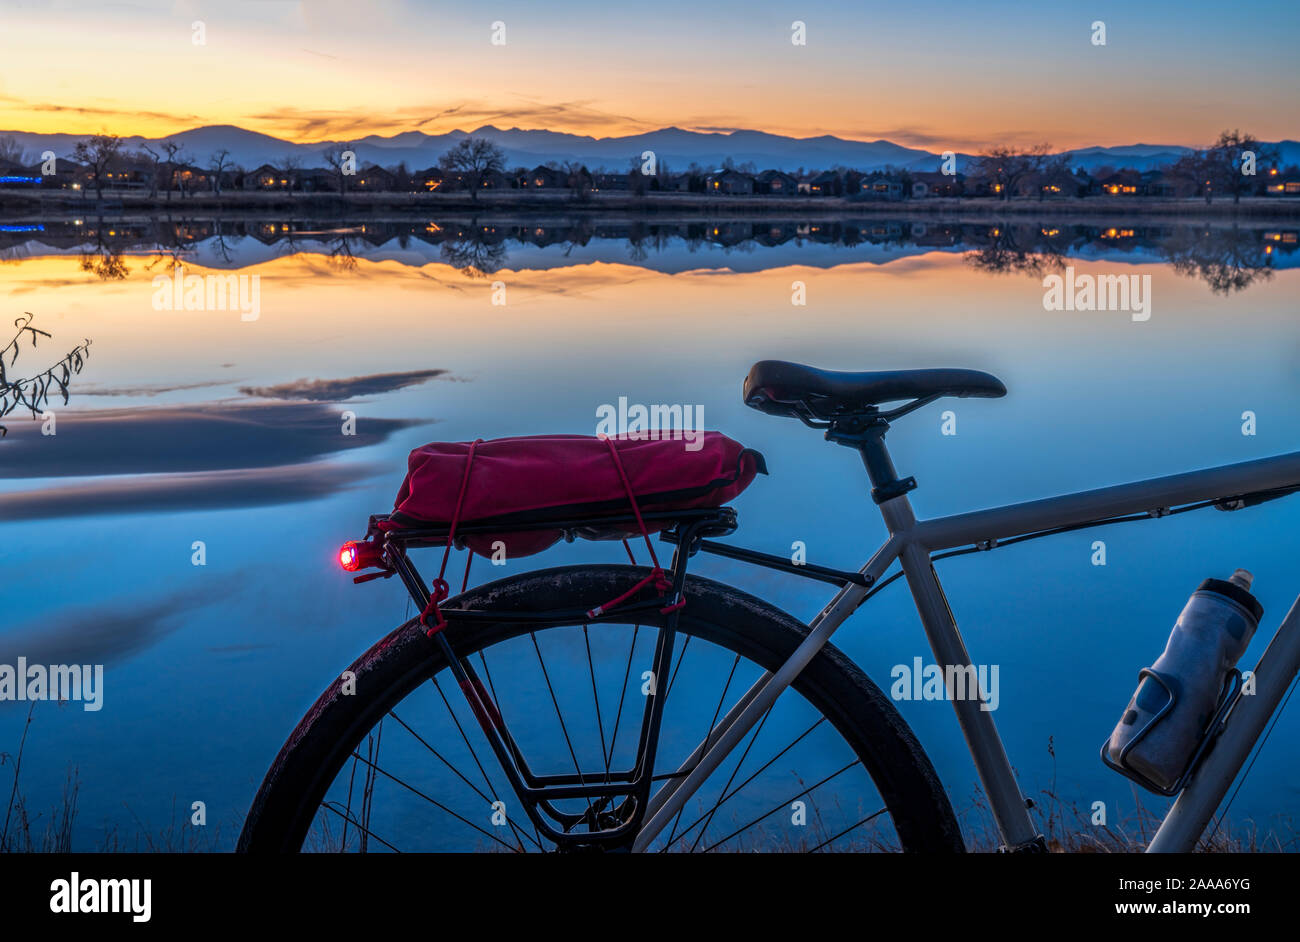 Silhouette d'un vélo de randonnée contre coucher de soleil sur le lac et les montagnes Rocheuses à Loveland, Colorado Banque D'Images